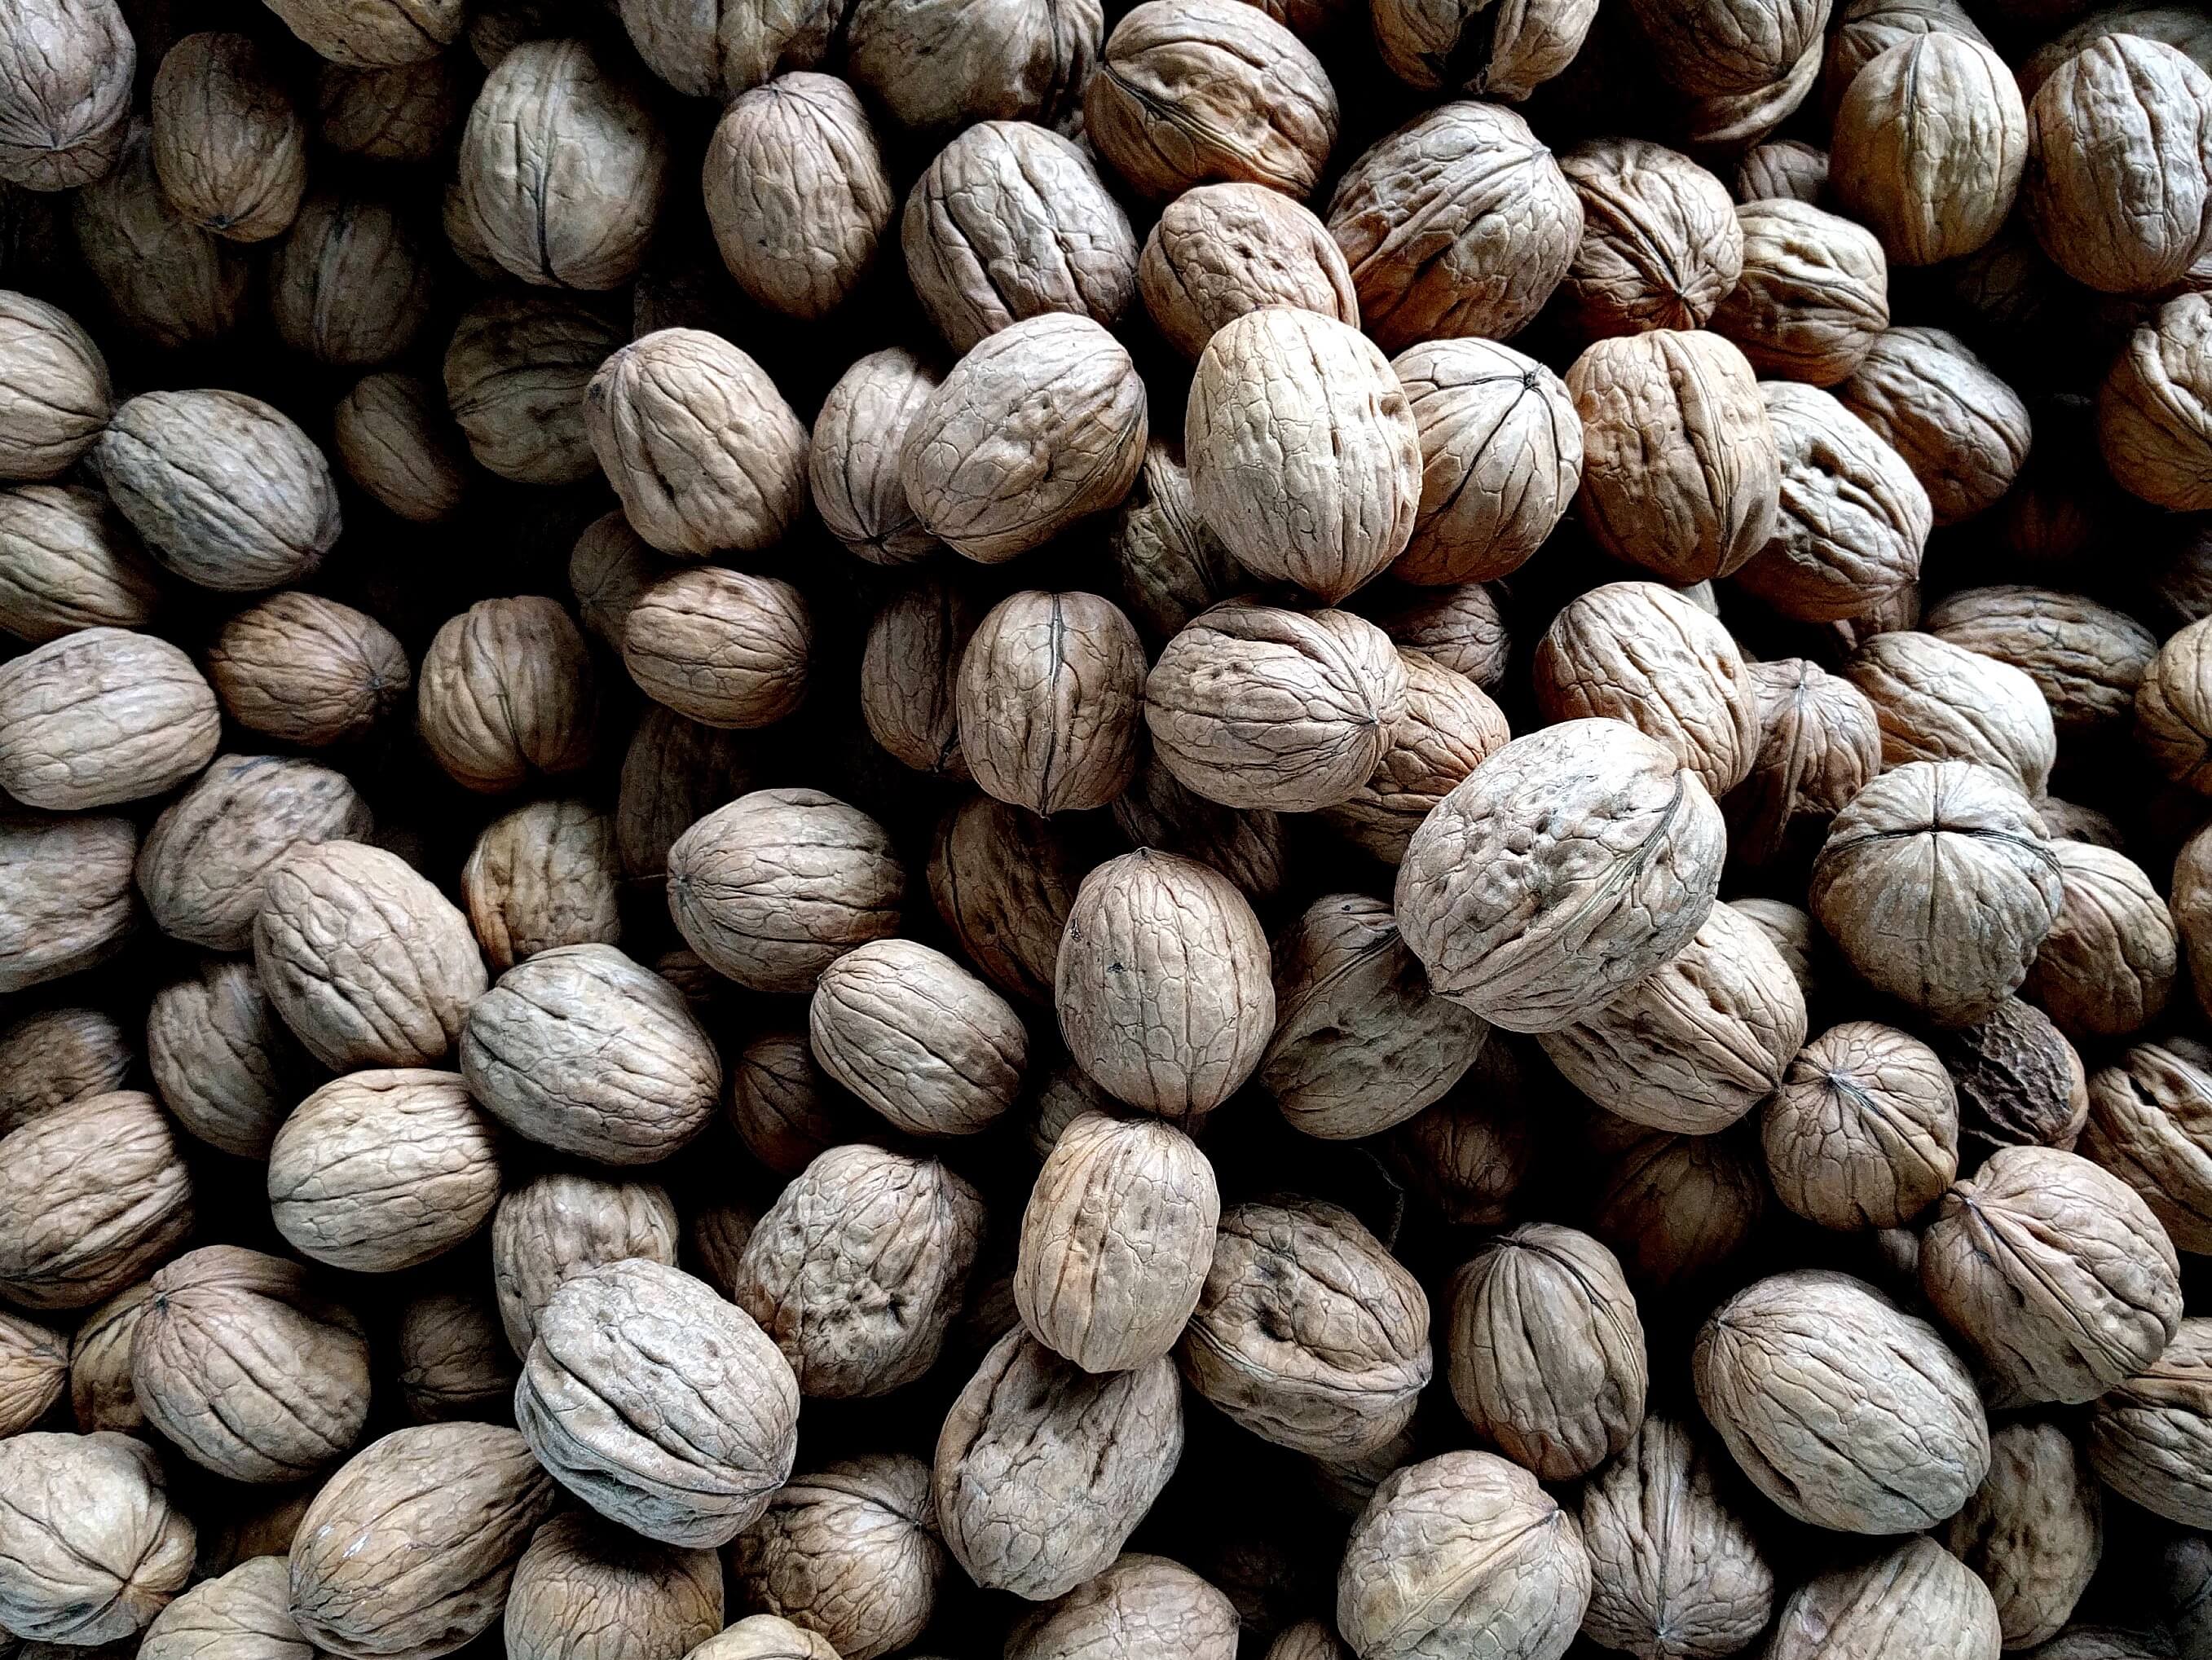 lots of walnuts